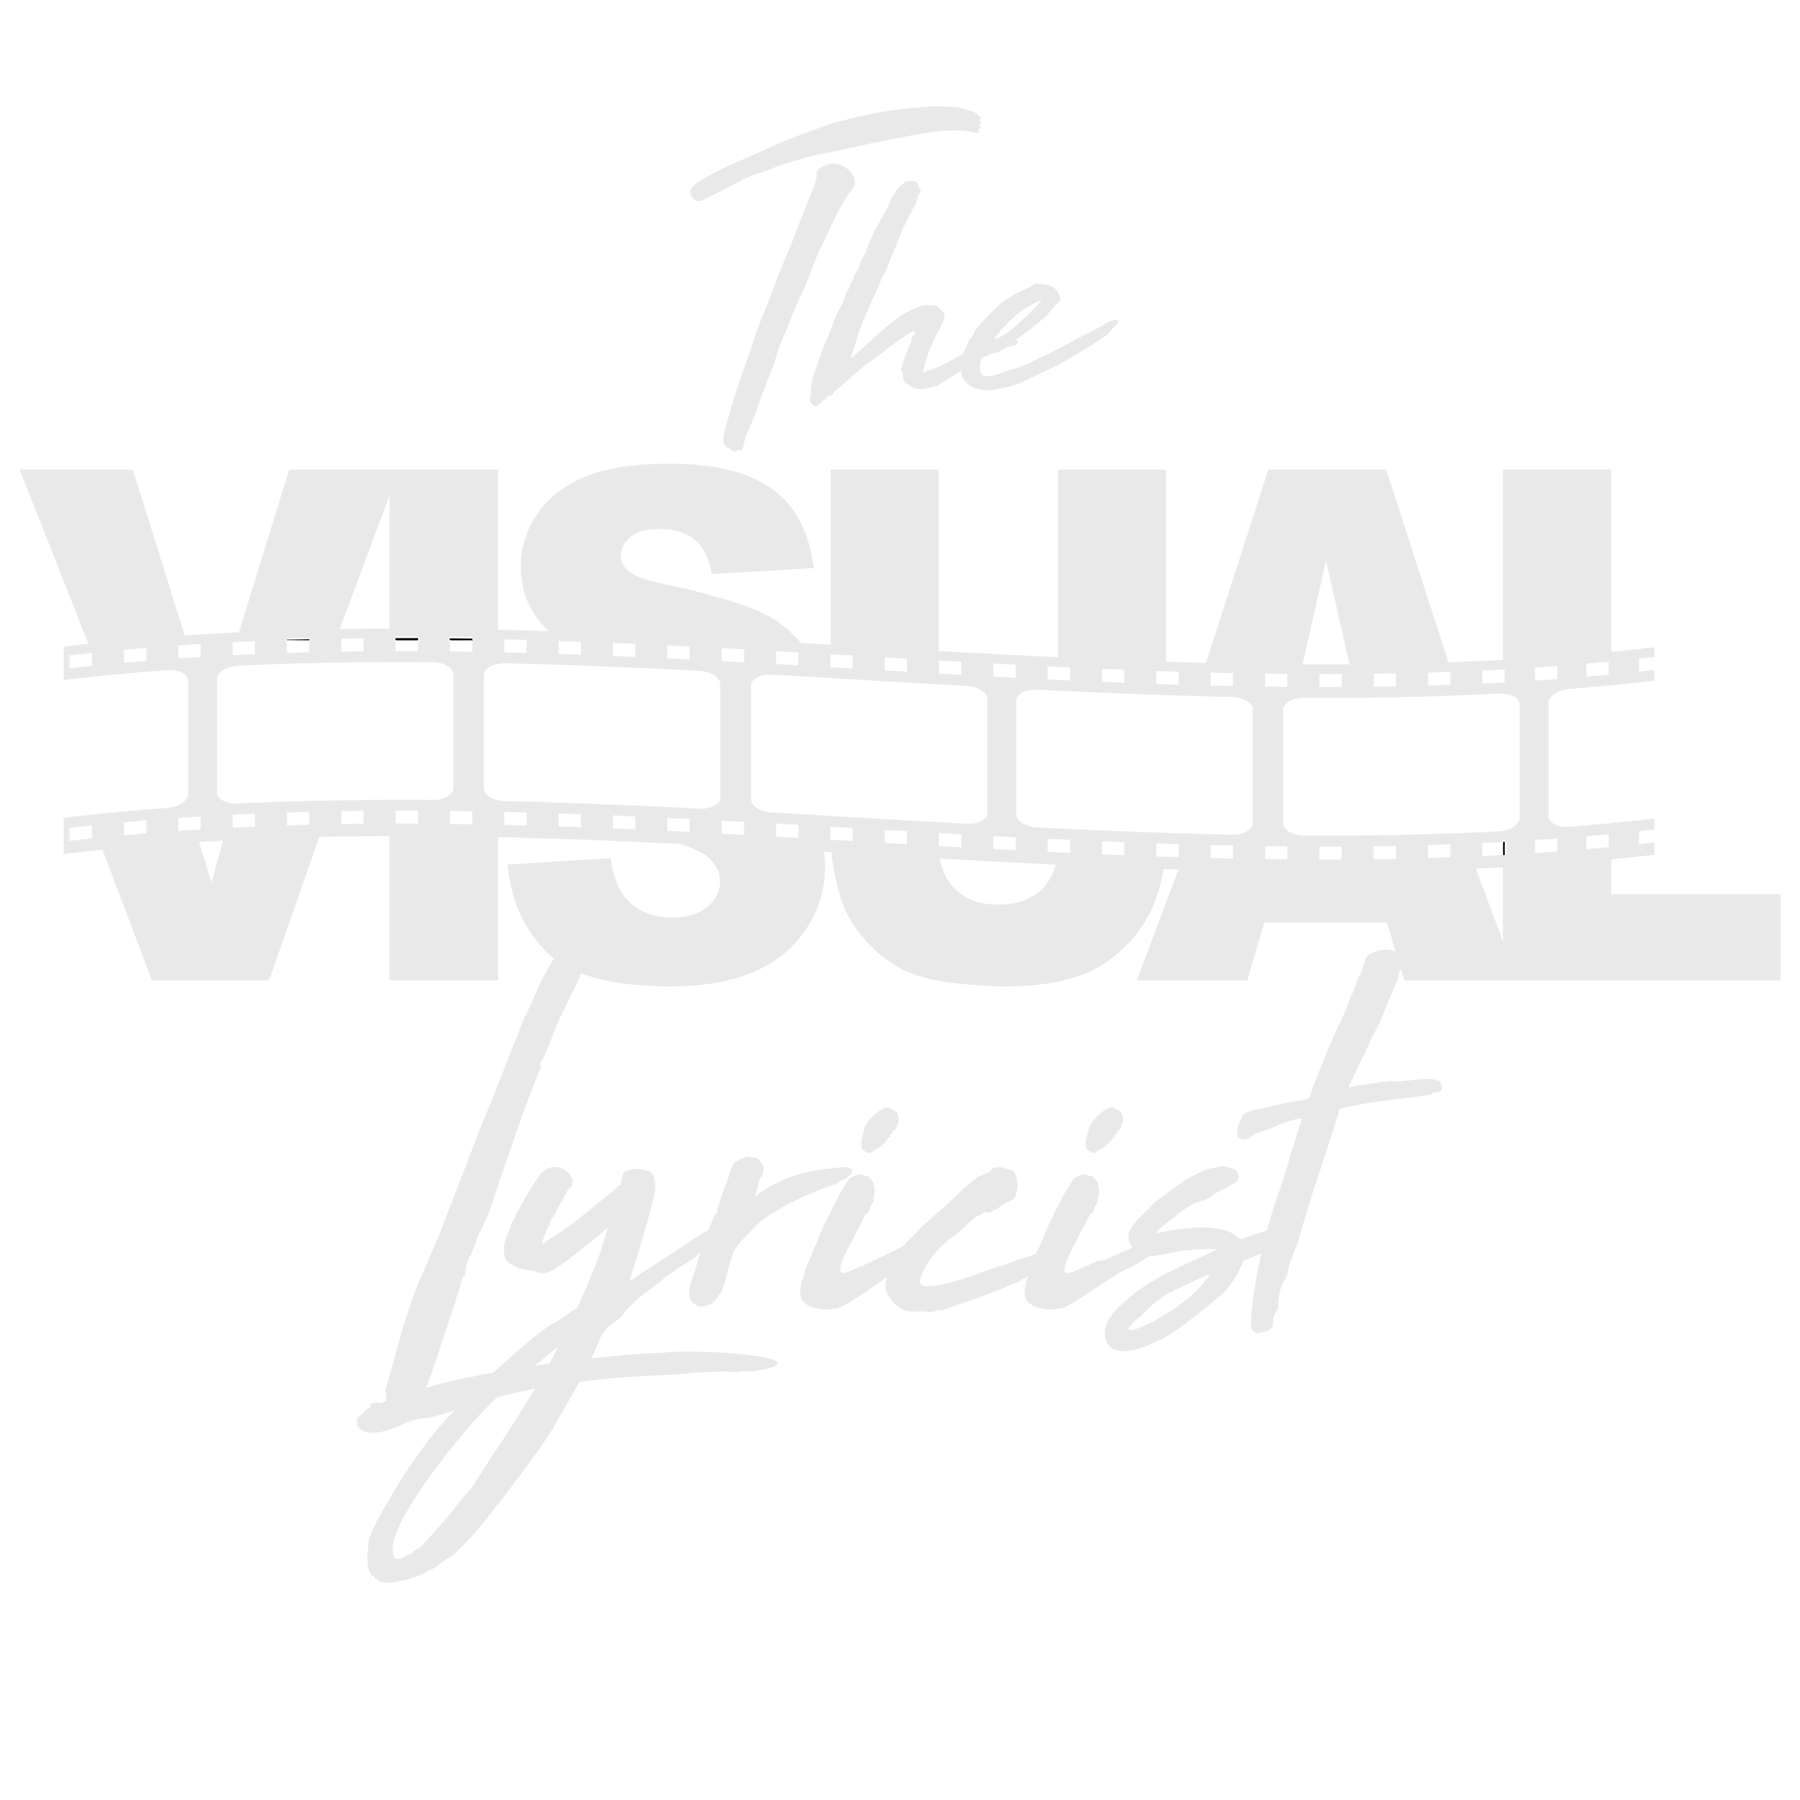 The Visual Lyricist